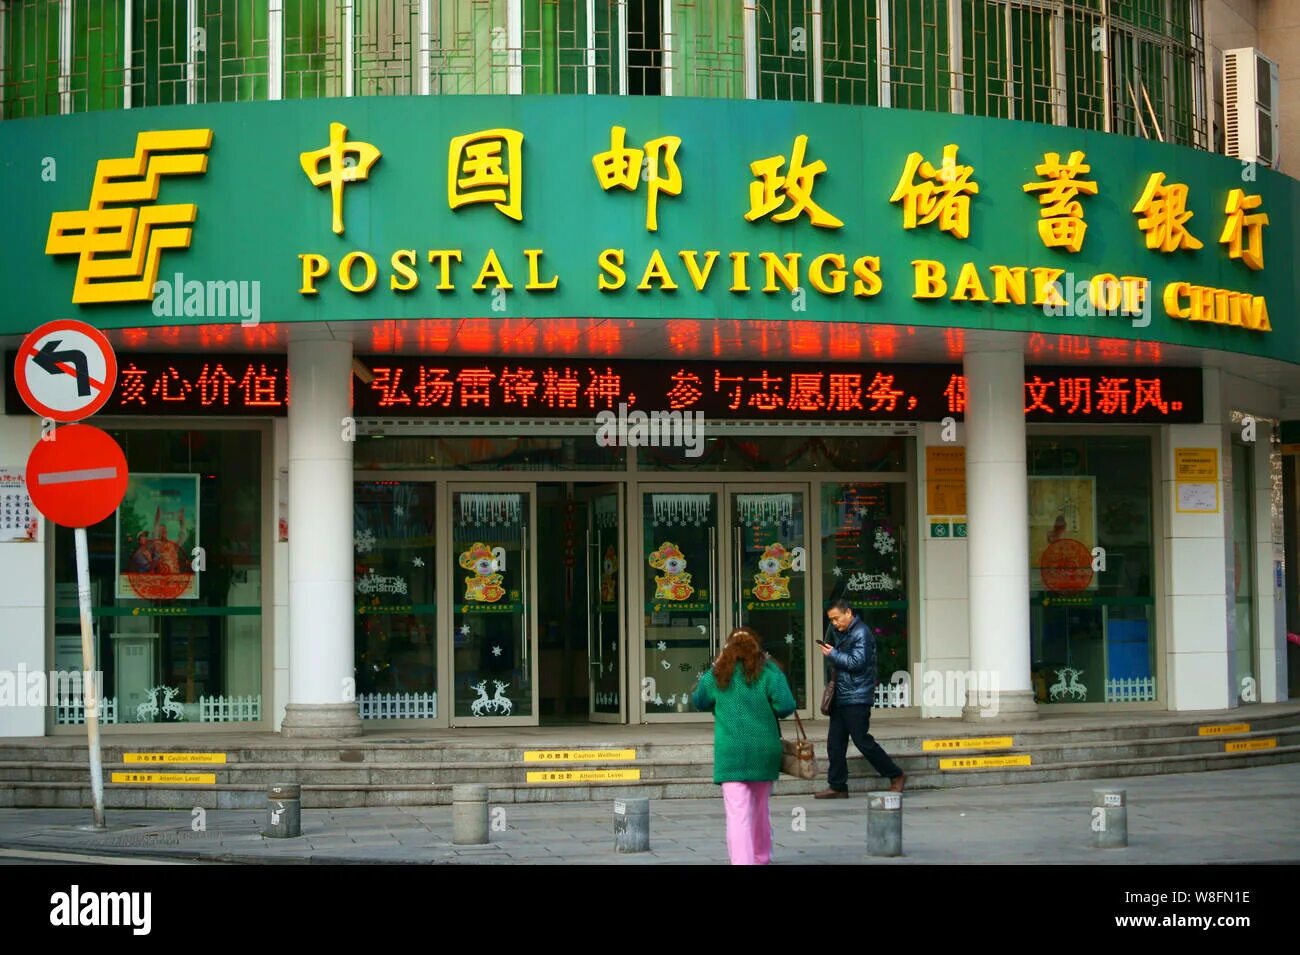 Банк китай город. Городские банки Китая. Коммерческие банки Китая. Центральный банк Китая. А В Пекине — Bank of China.